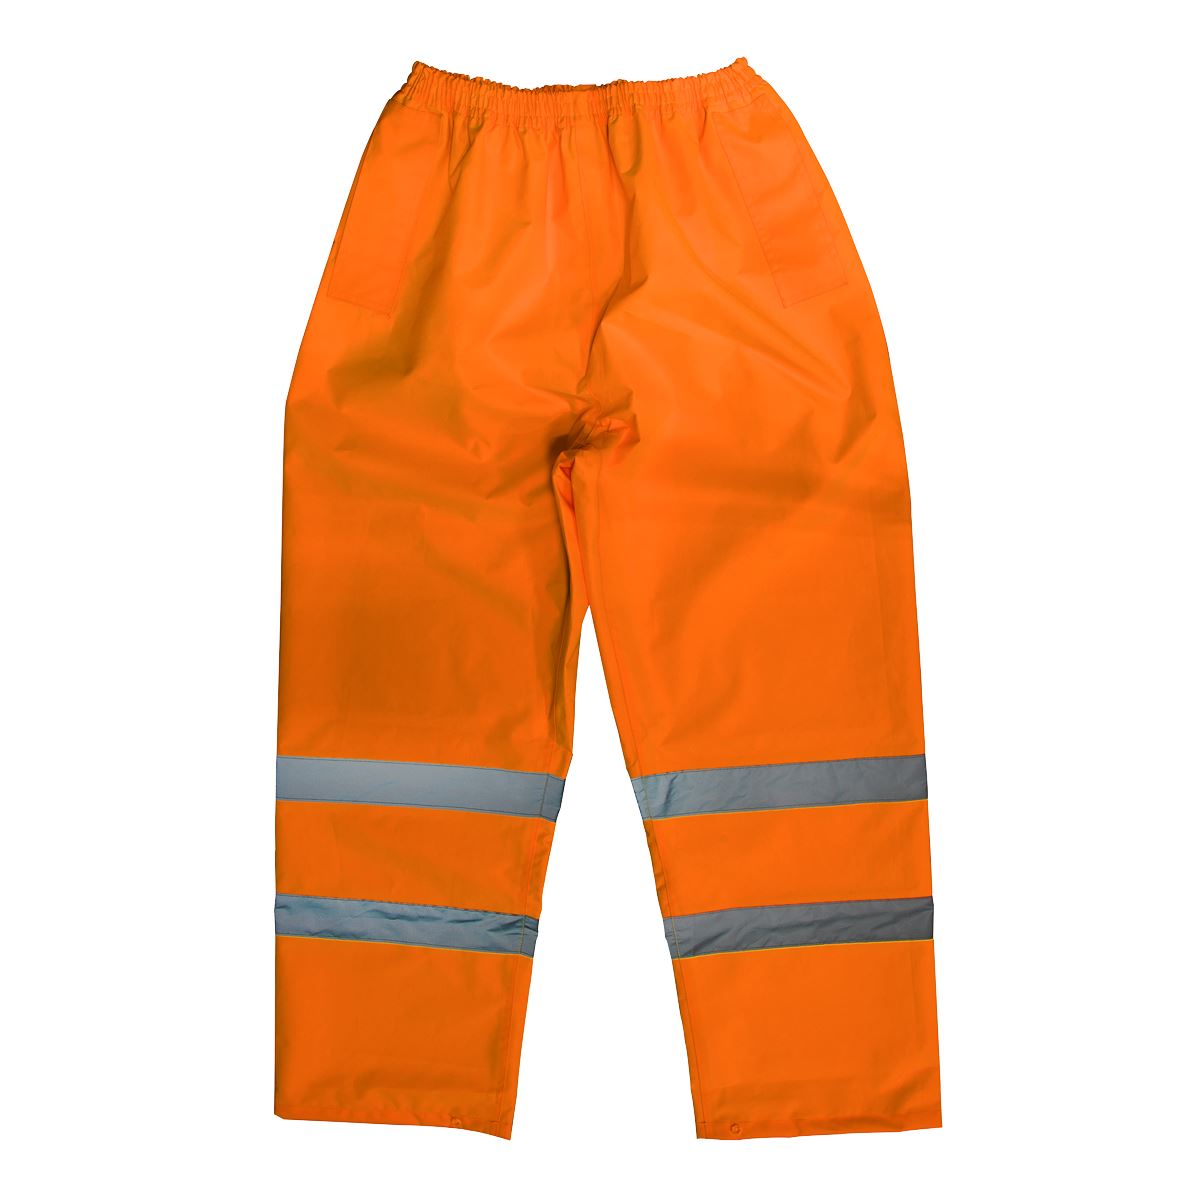 Worksafe by Sealey Hi-Vis Orange Waterproof Trousers - Large